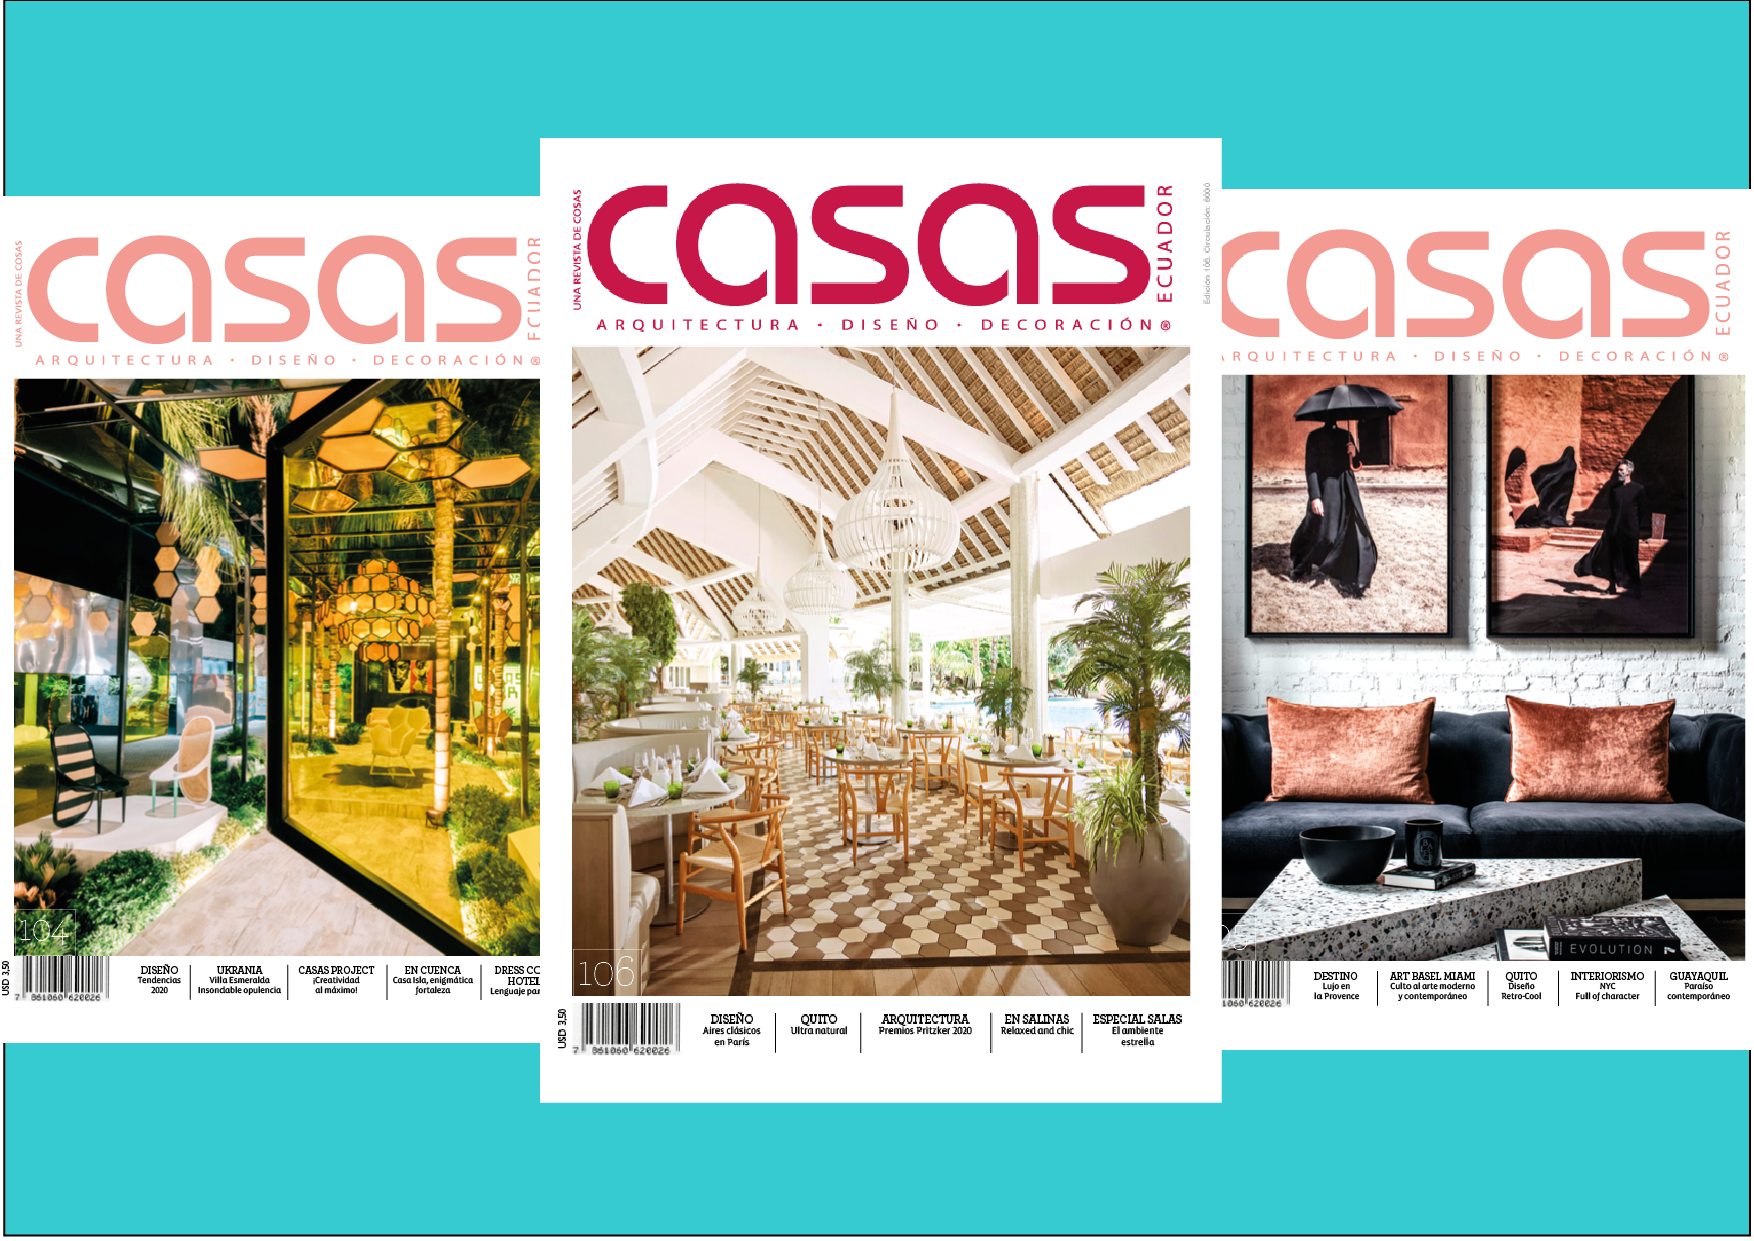 Inspírate con Casas, encuentra aquí las últimas ediciones sin ningún costo  – Revista Casas